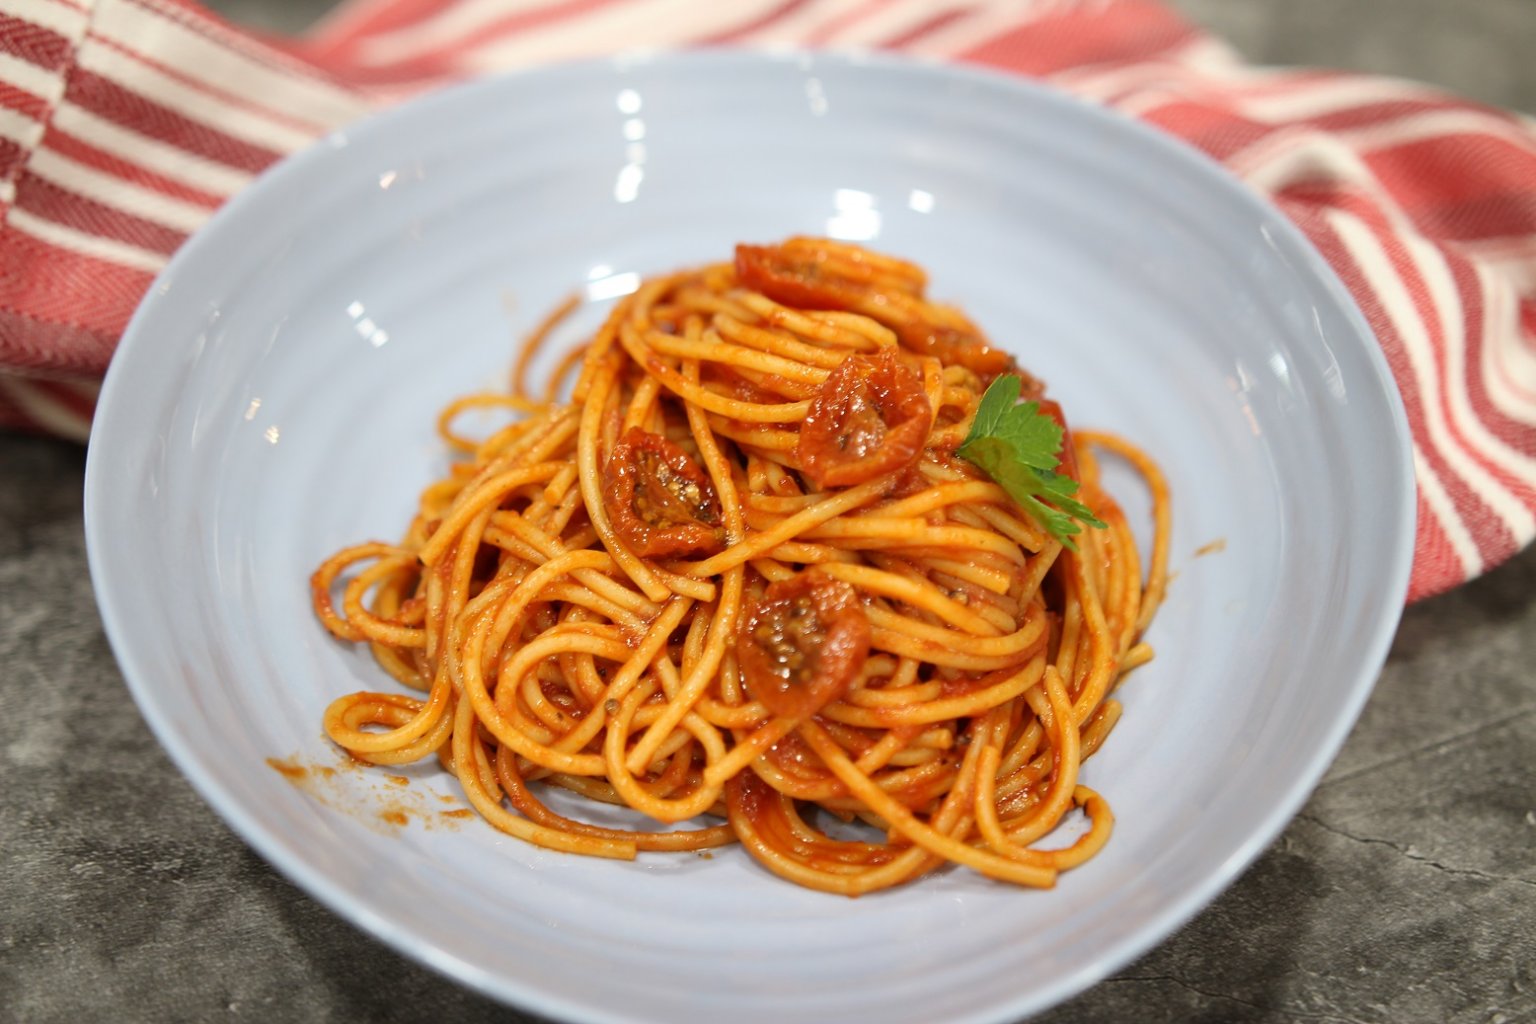 Spaghetti all'Assassina 'Killer Spaghetti' | Pasquale Sciarappa Recipes